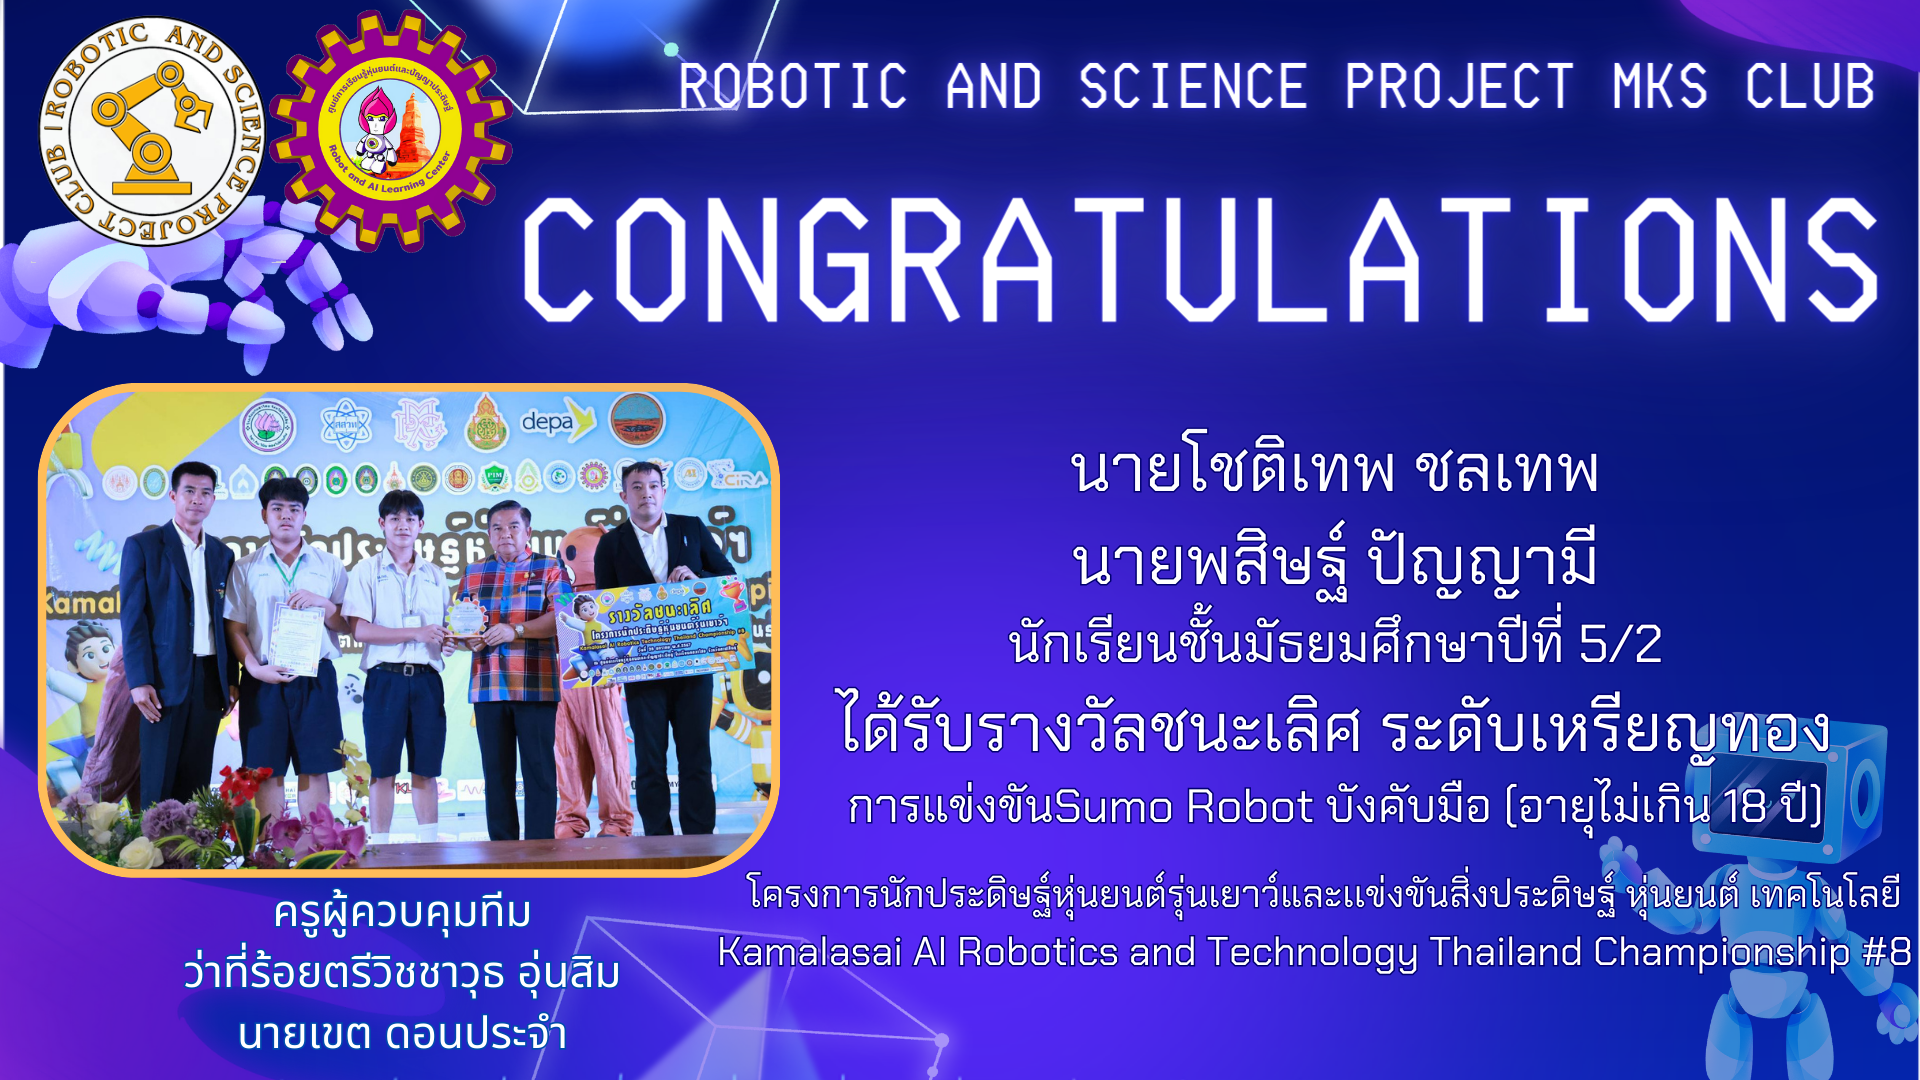 ขอแสดงความยินดีกับนักเรียน เข้าร่วมแข่งขัน Kamalasai Robotics Thailand Championship #8